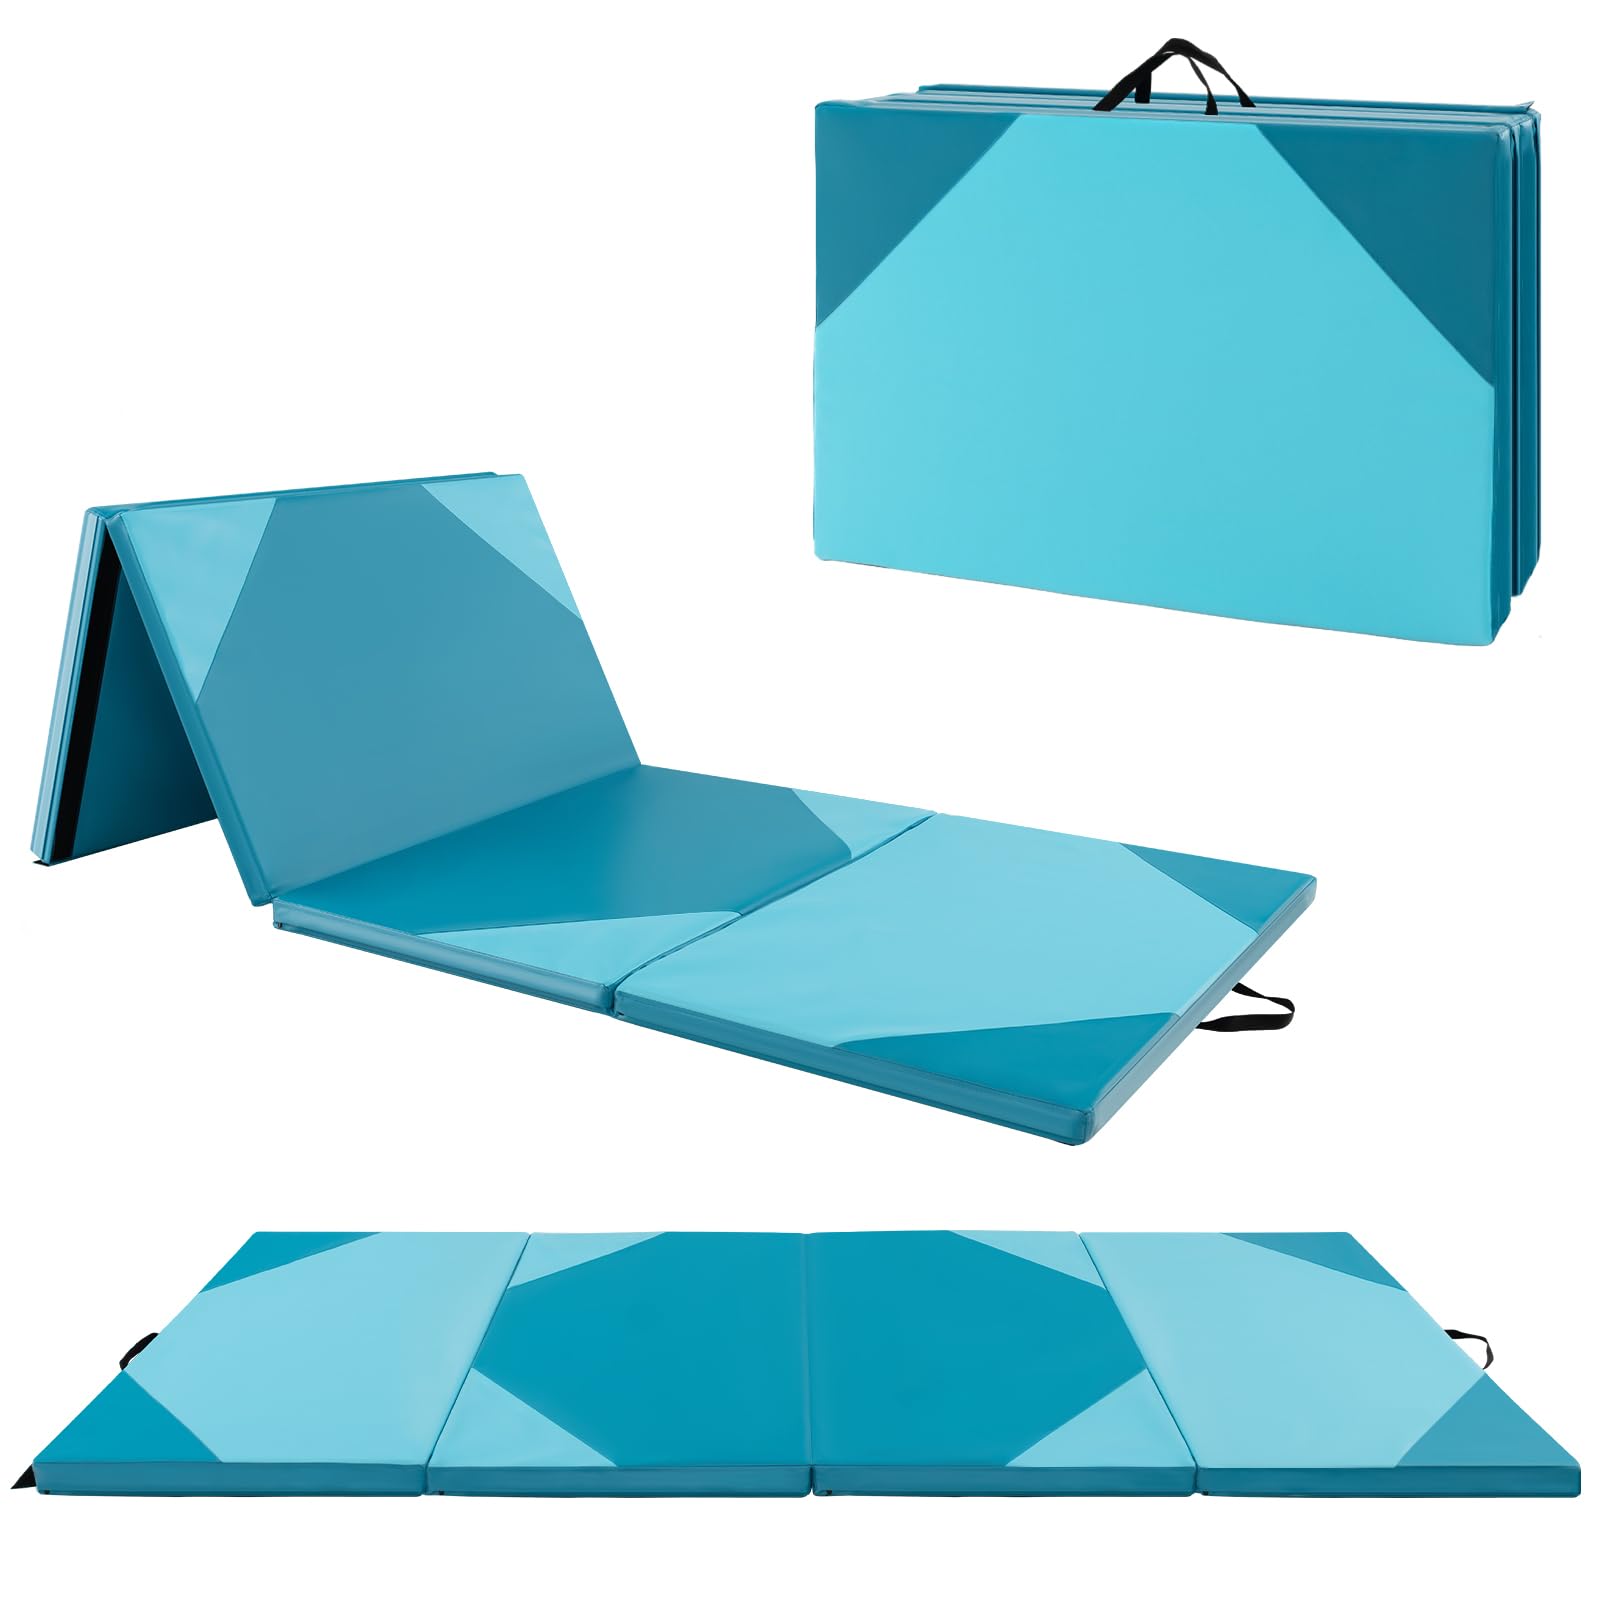 Giantex 4'x10' Gymnastics Mat, 2" Thick Folding Tumbling Mat with Carrying Handles